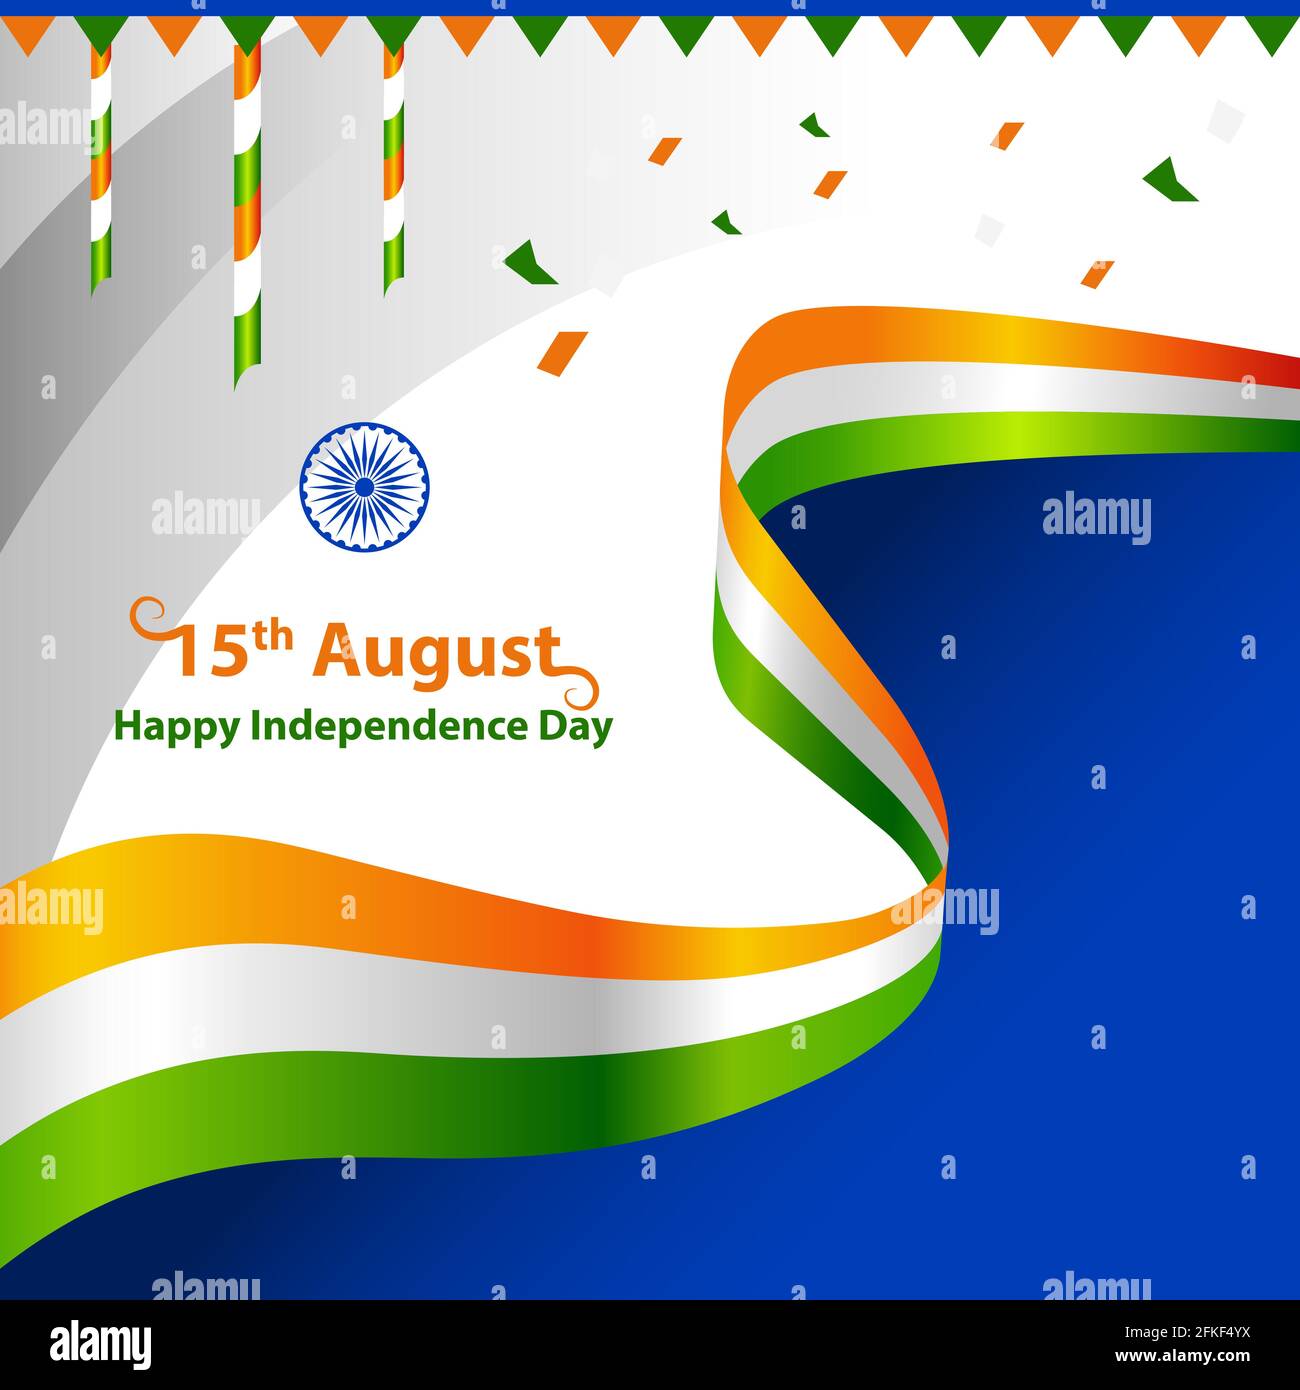 Happy Independence Day Indien mit tricolor Flagge Gruß Vektor Grafik-Layout. 15. August Vorlage für Broschüre, Flyer, Poster, Web, Printmedien. Stock Vektor